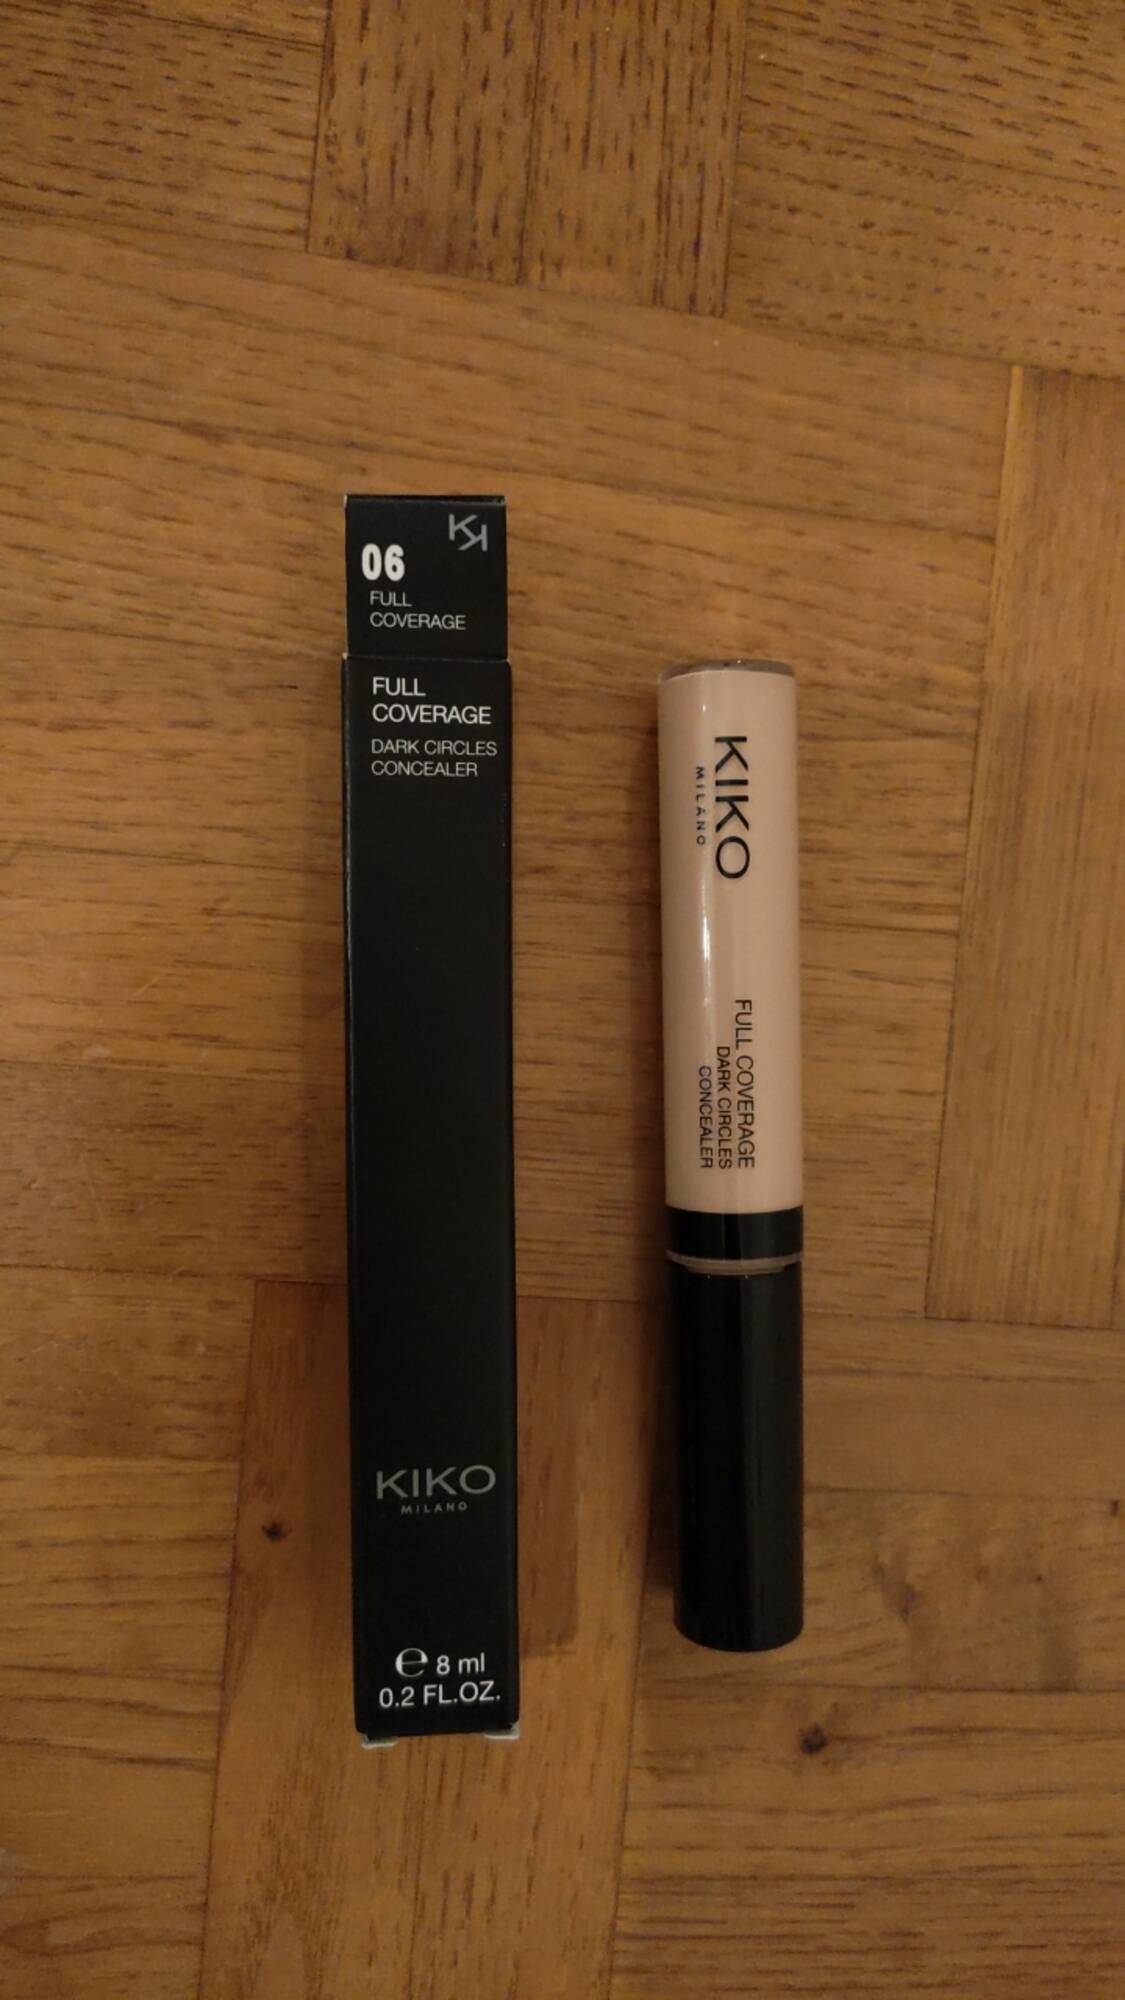 KIKO - 06 Full coverage - Dark circles concealer 